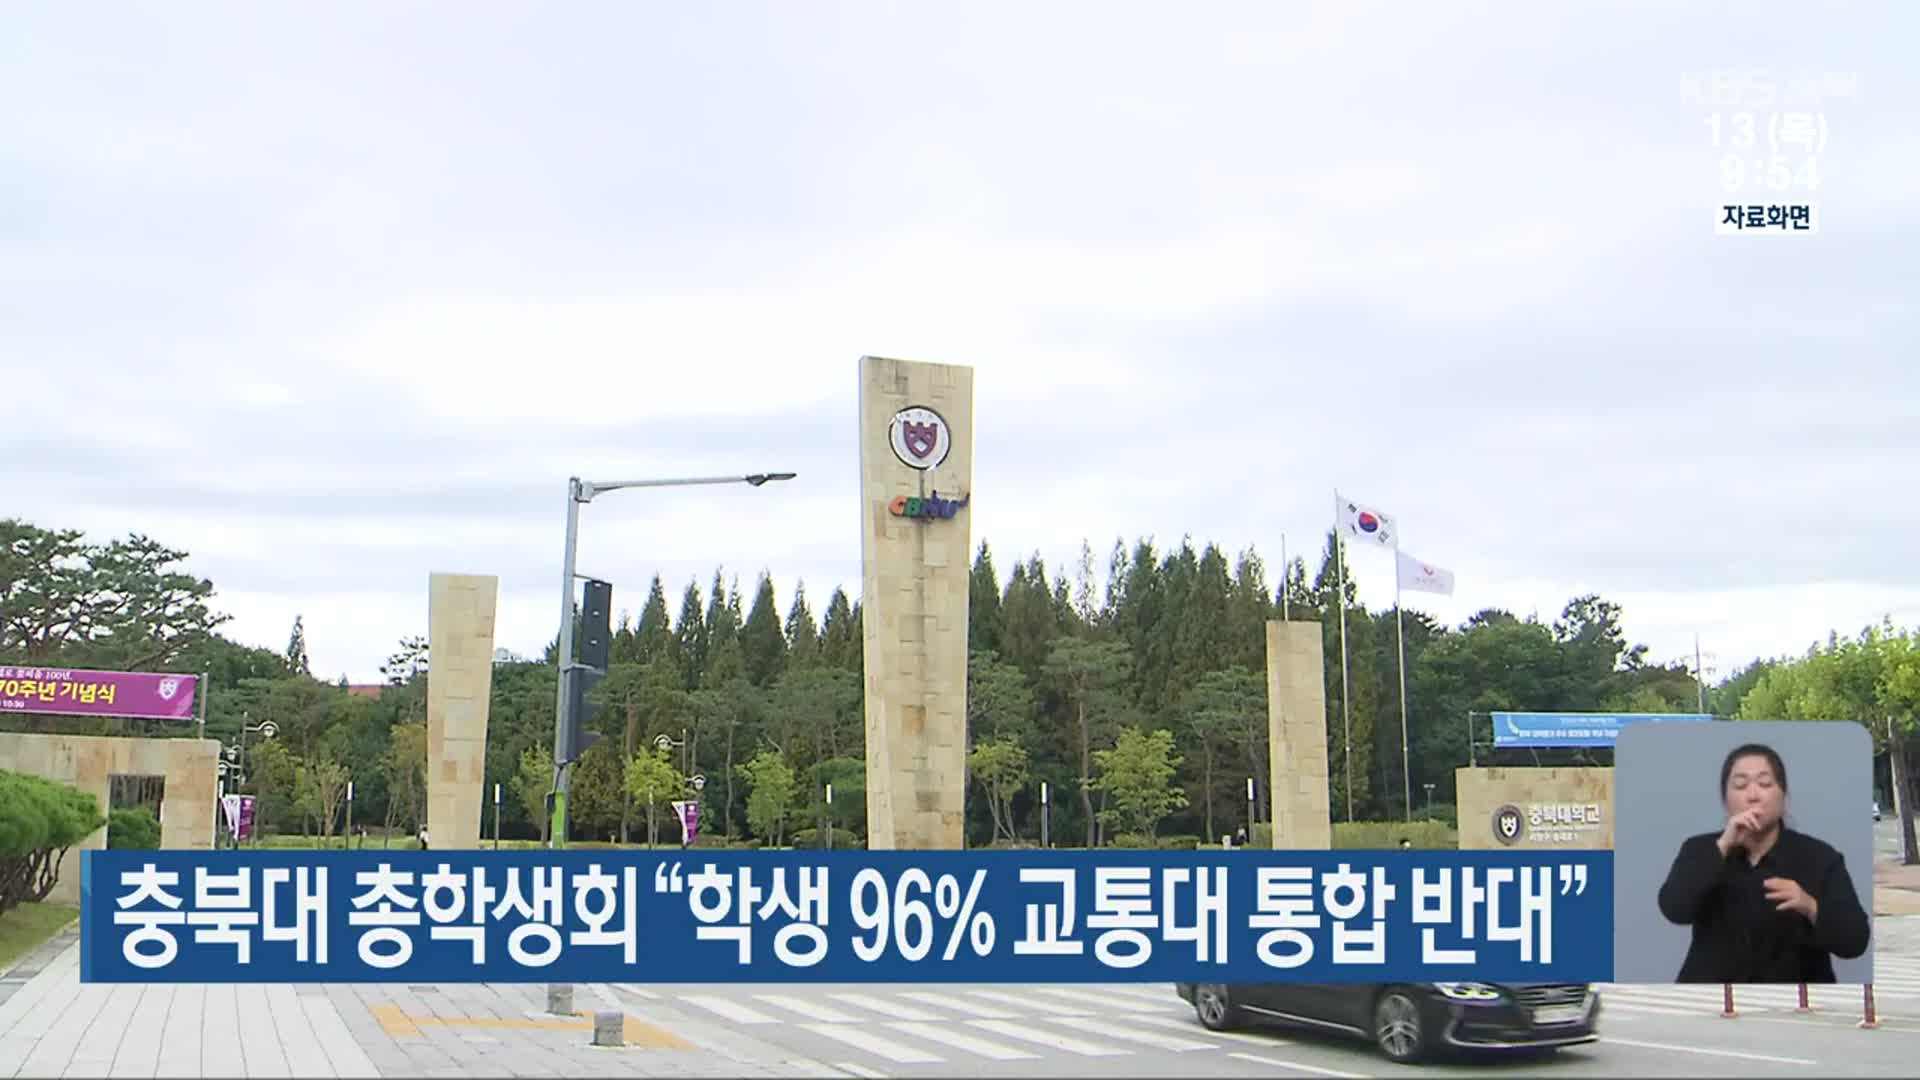 충북대 총학생회 “학생 96% 교통대 통합 반대”